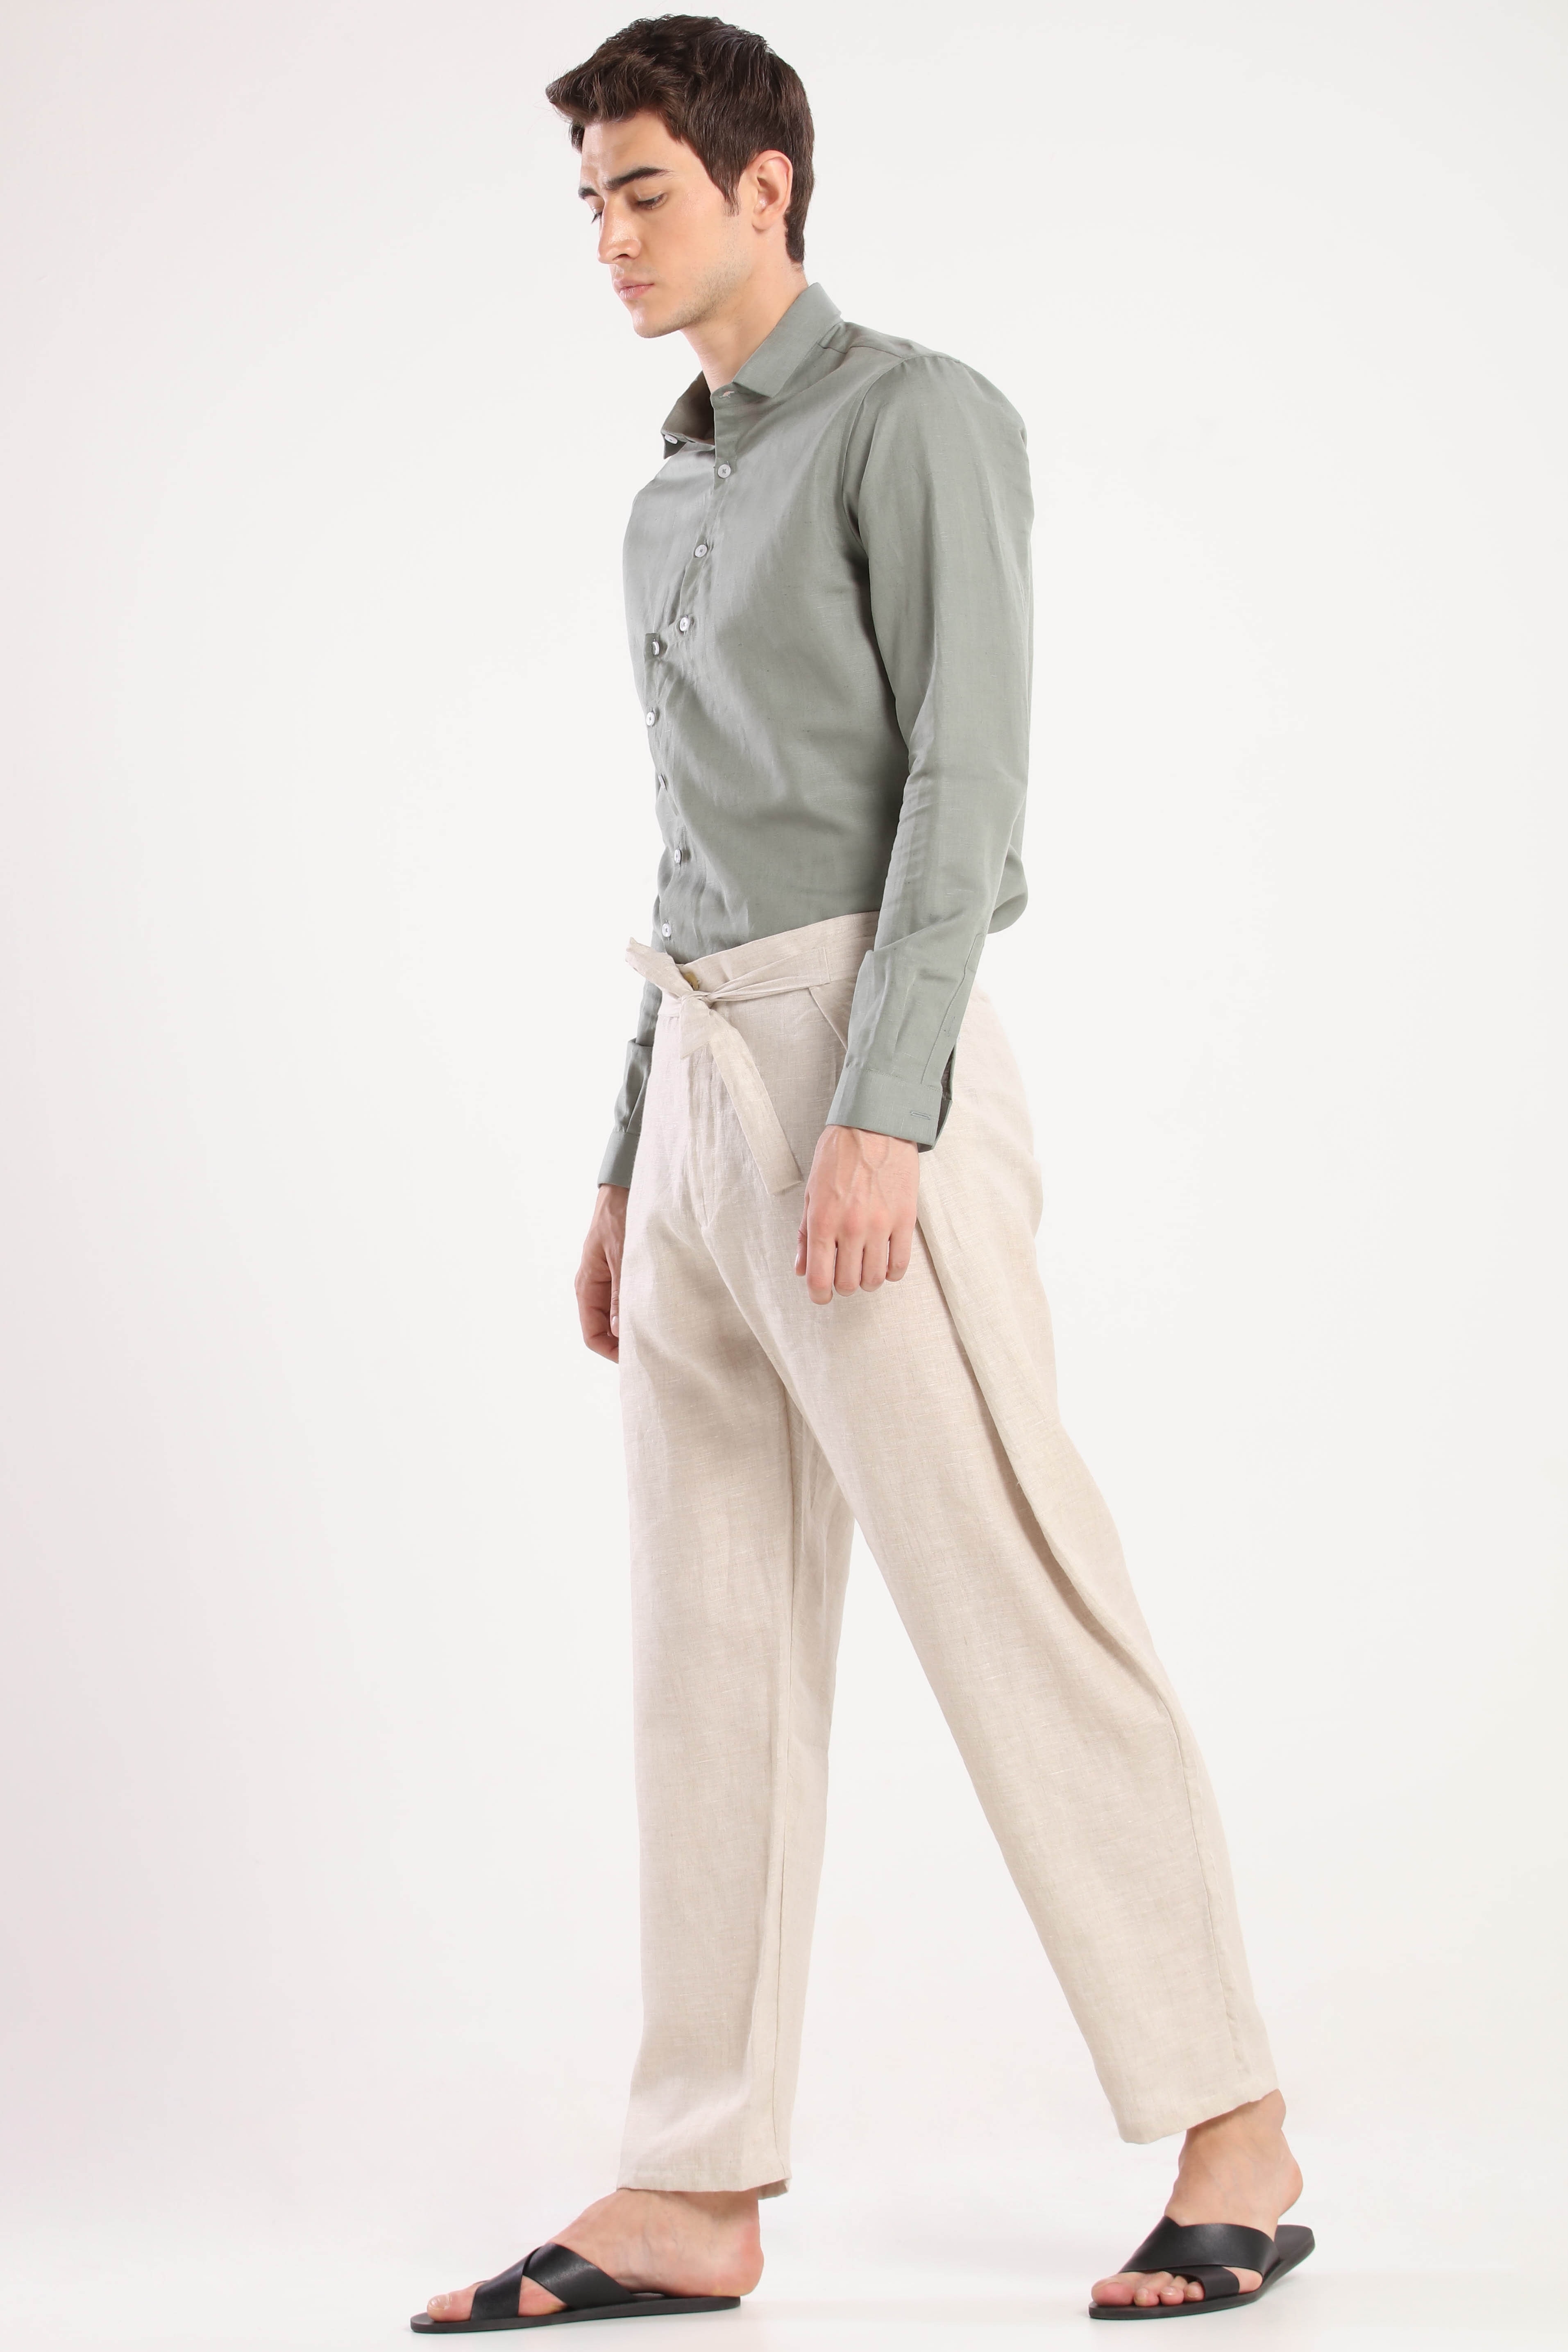 Buy Khaki Trousers  Pants for Men by ProEarth Online  Ajiocom